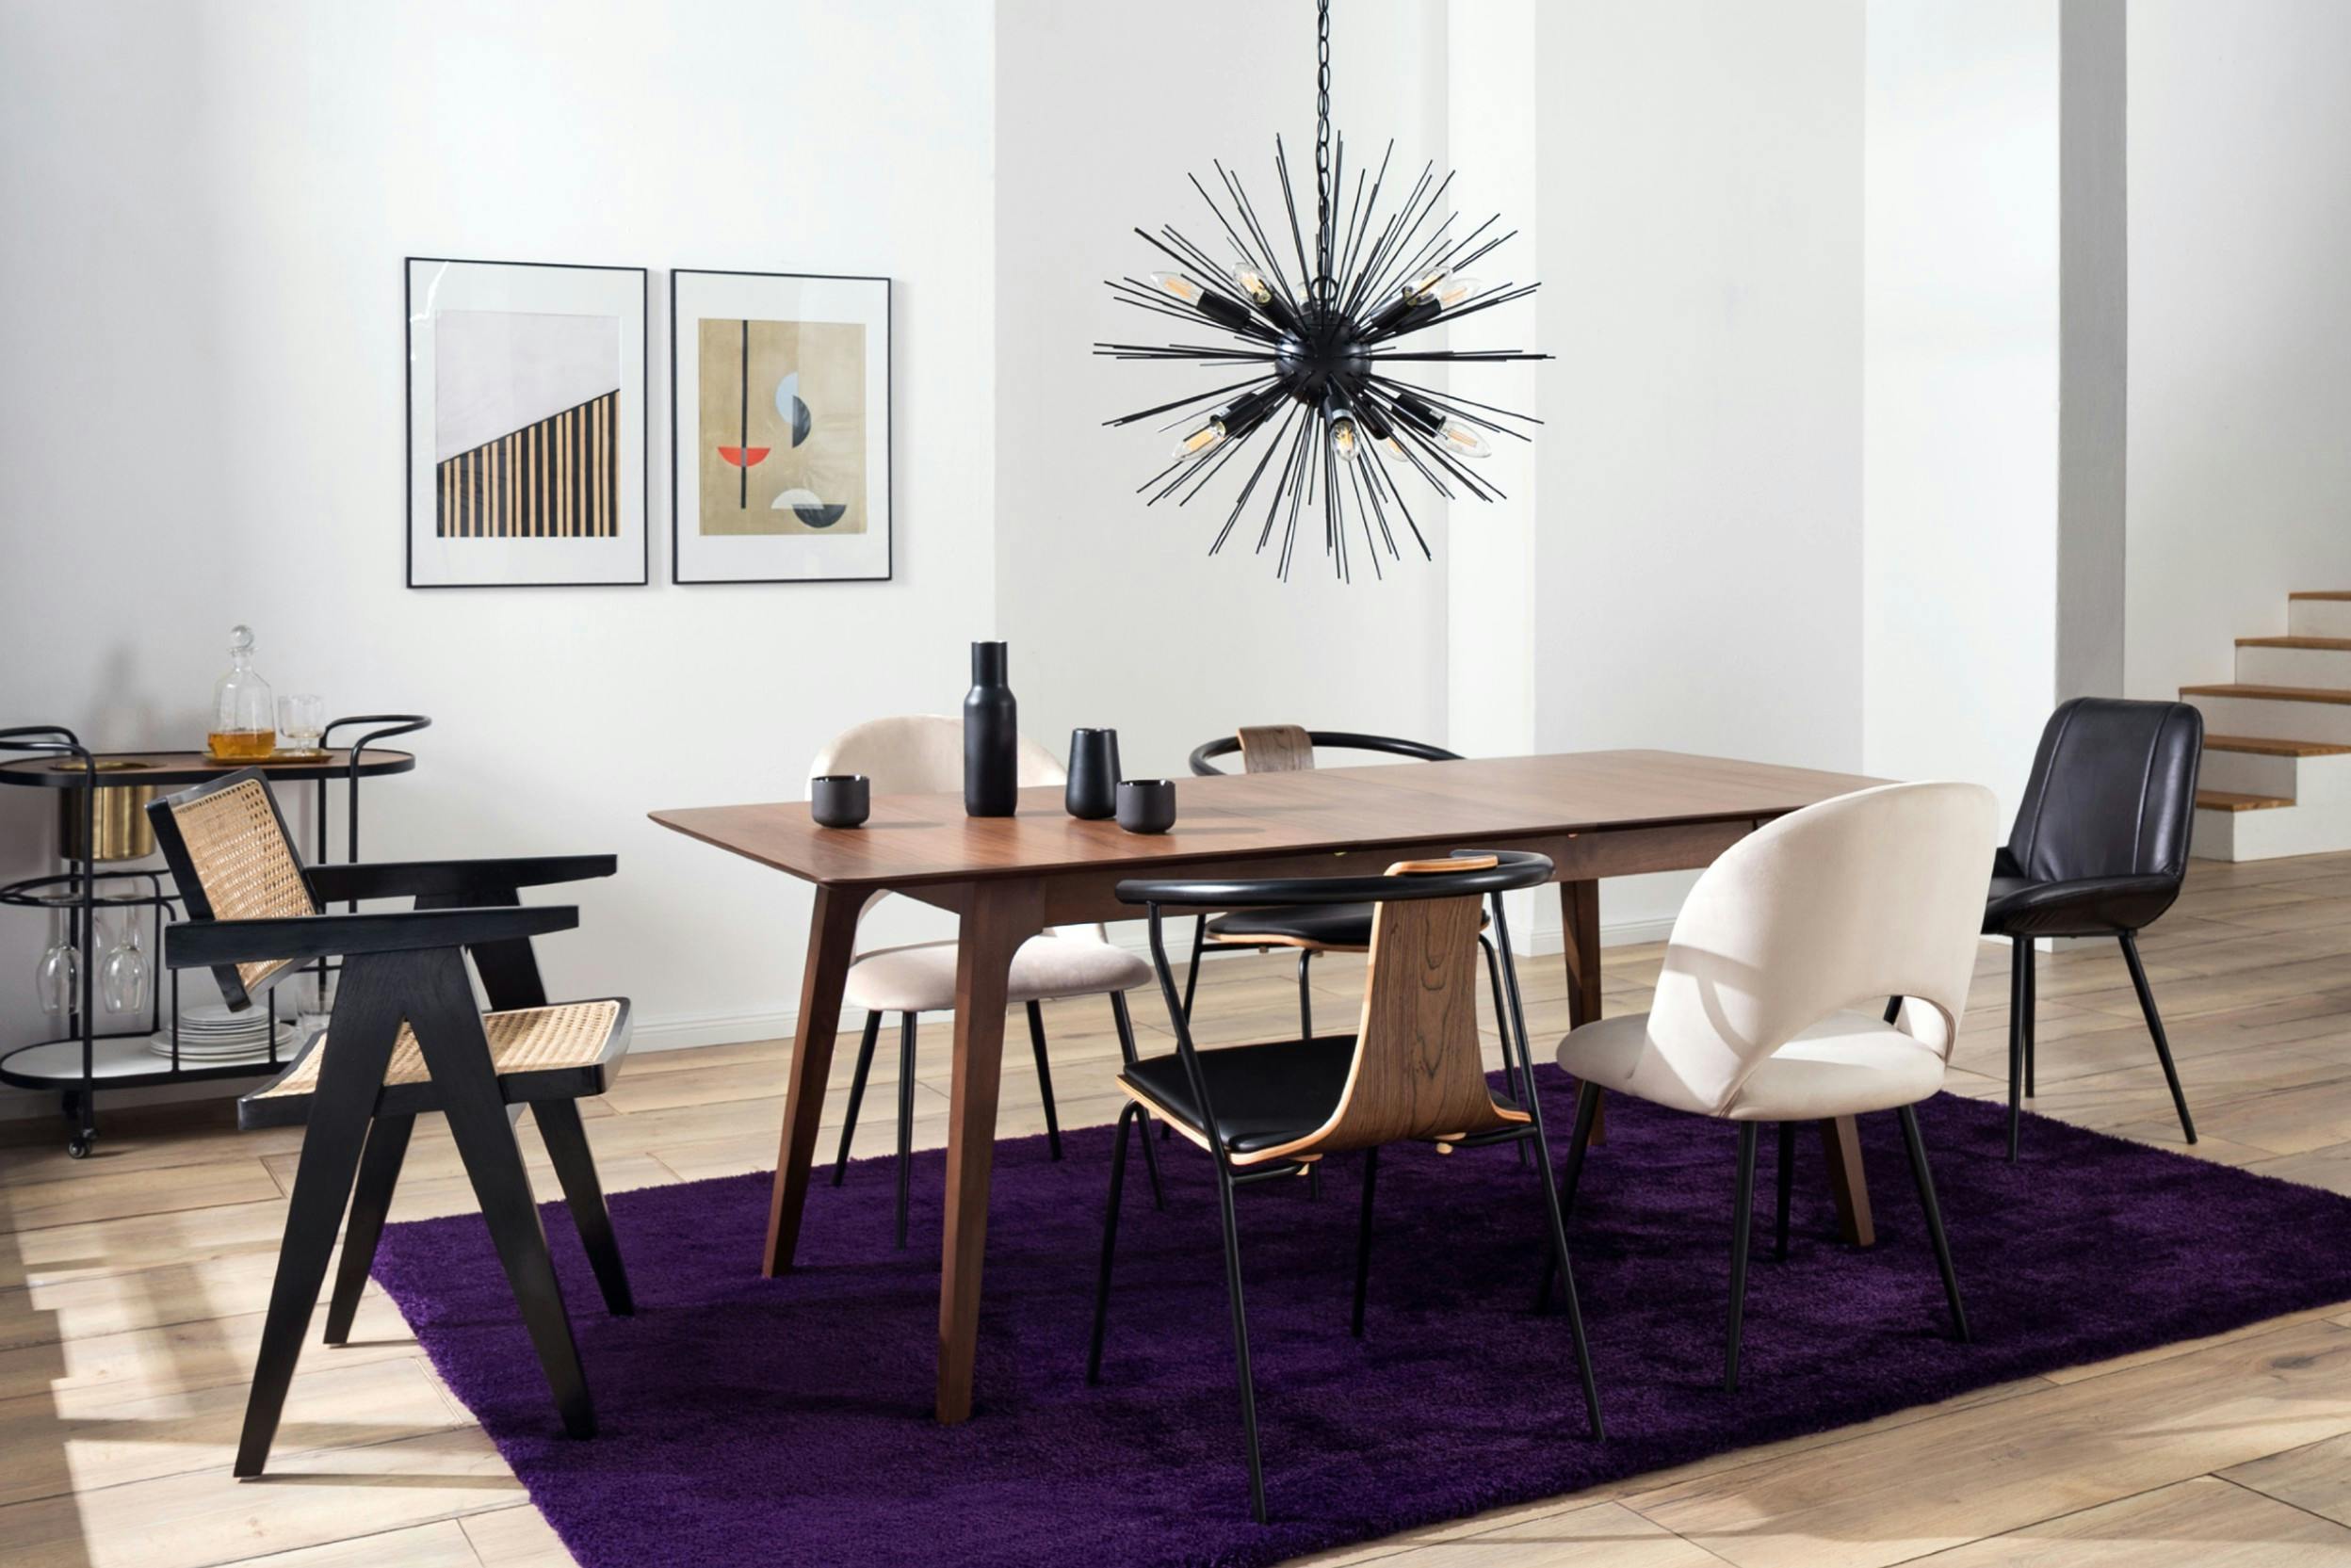 Table en bois sur tapis mauve sombre, avec chaises de styles et couleurs differents